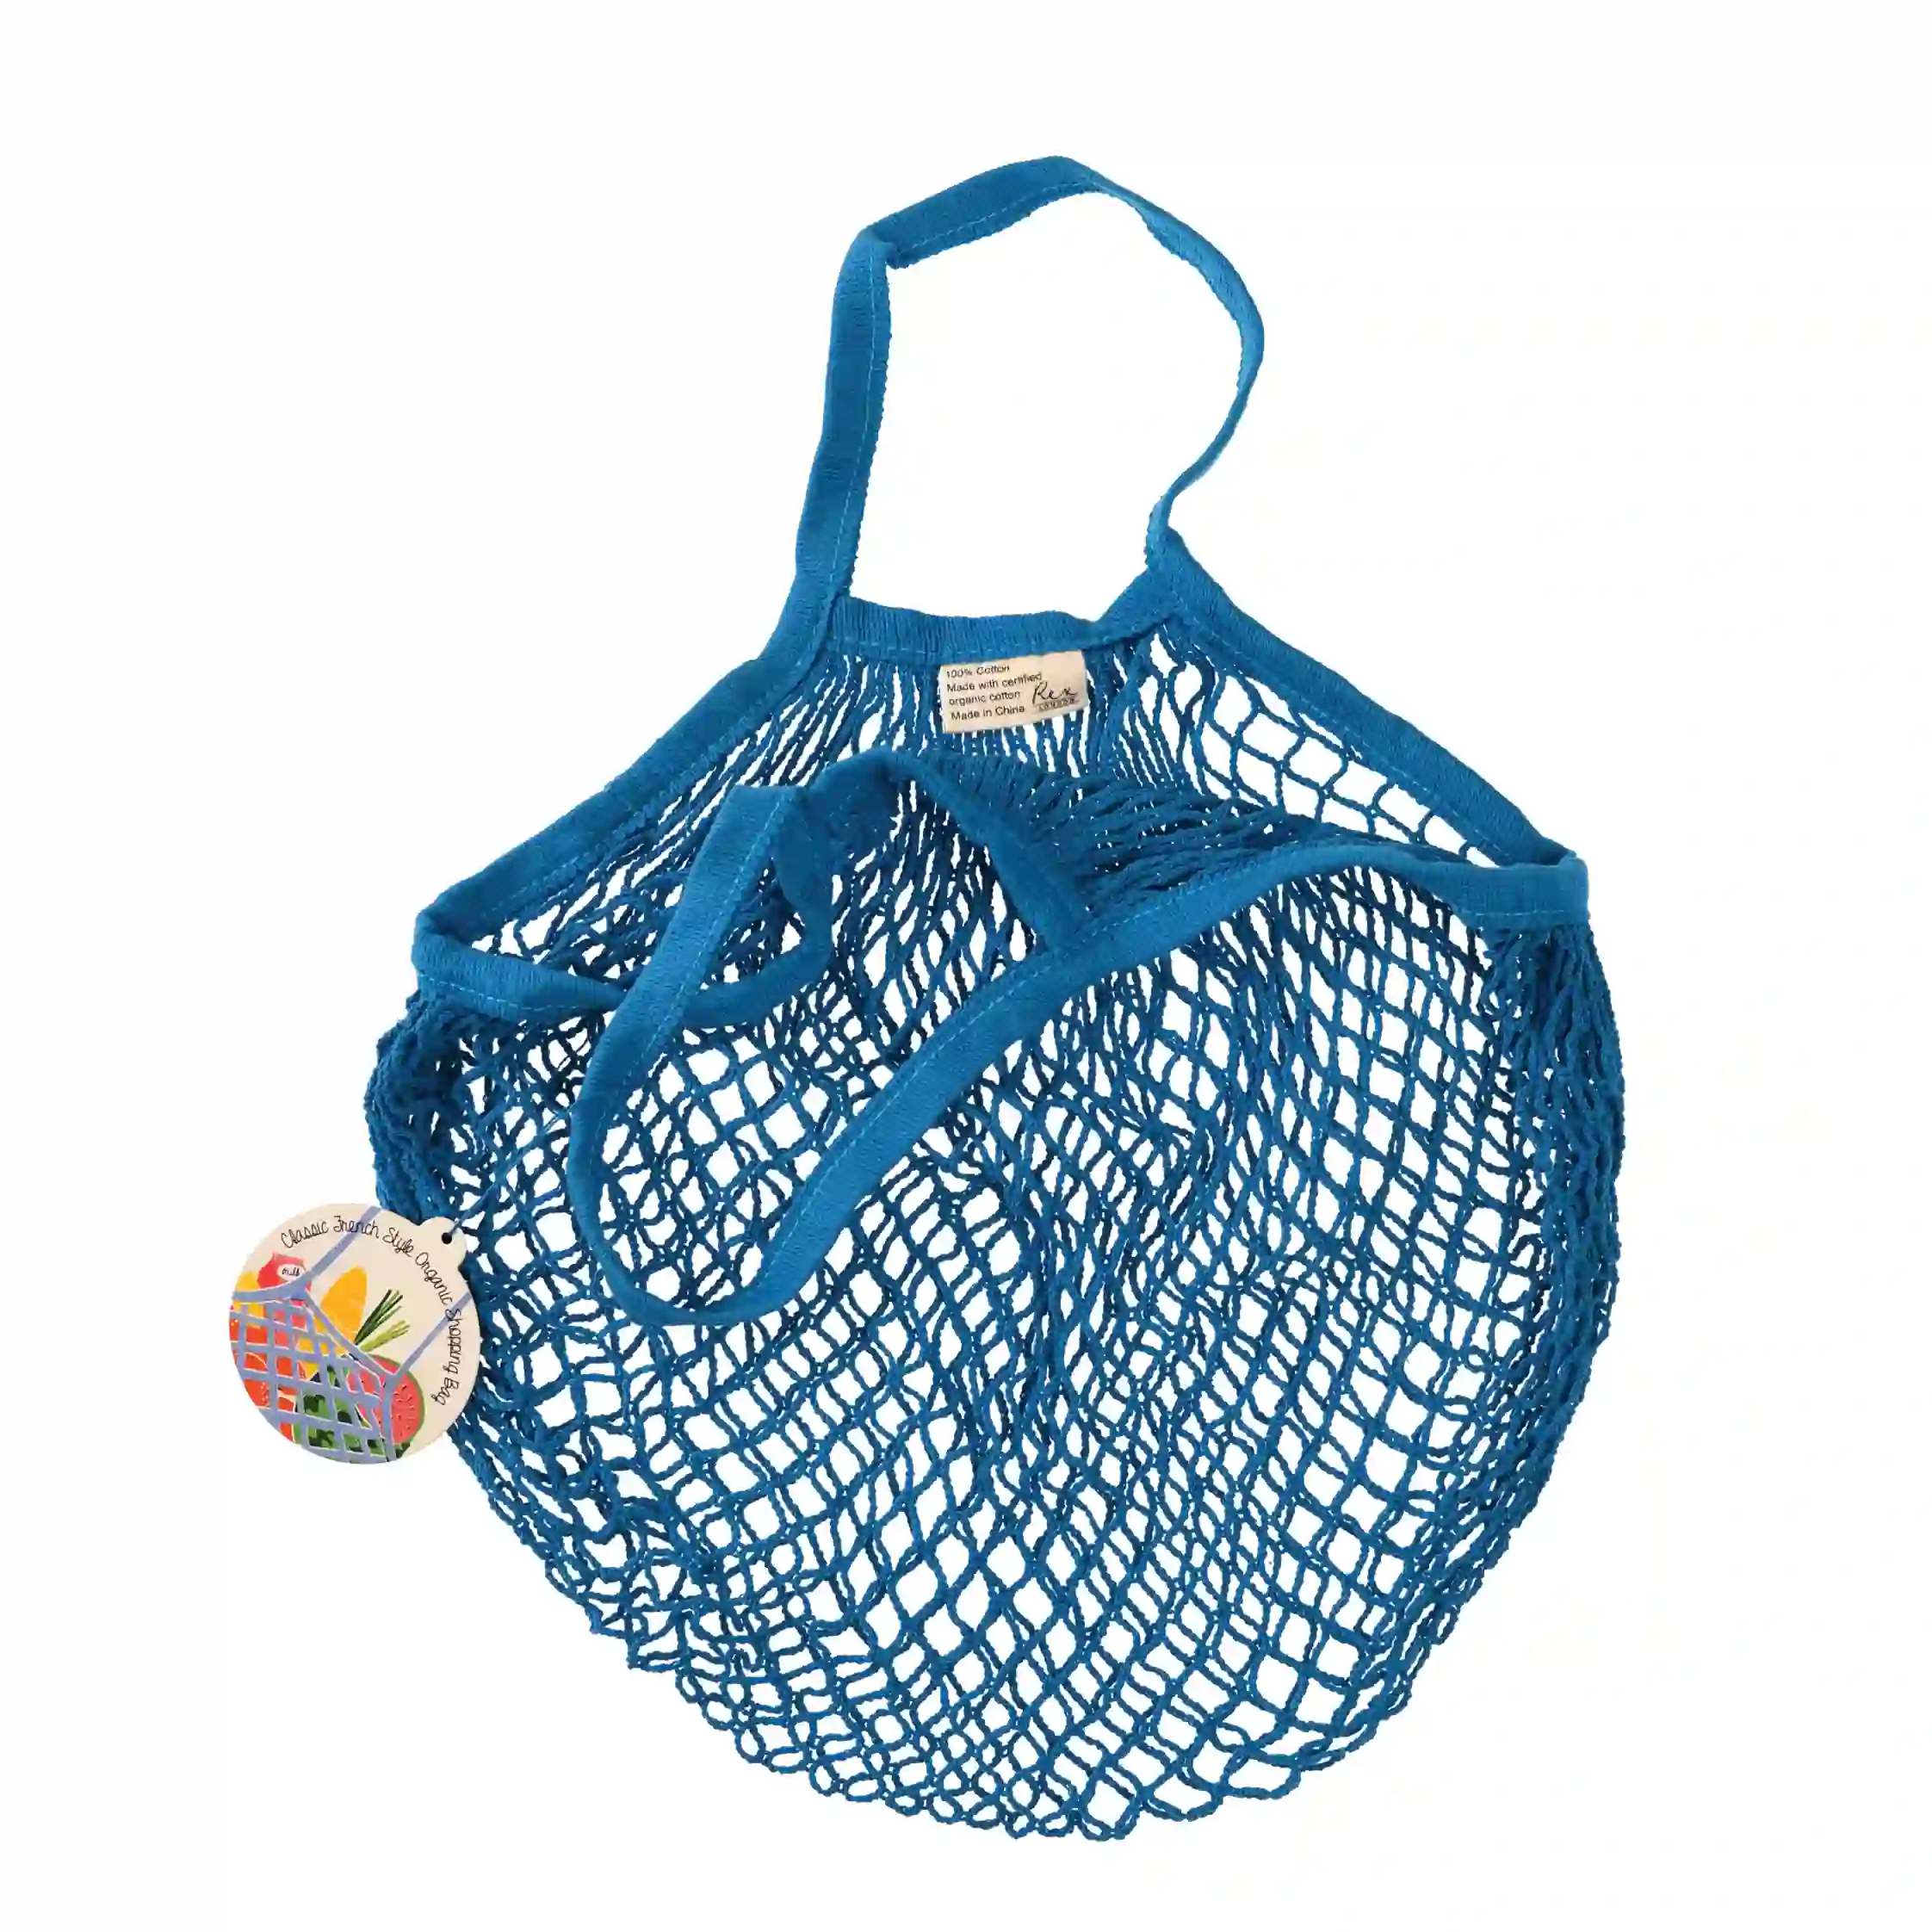 netzeinkaufstasche aus biobaumwolle in greek blue